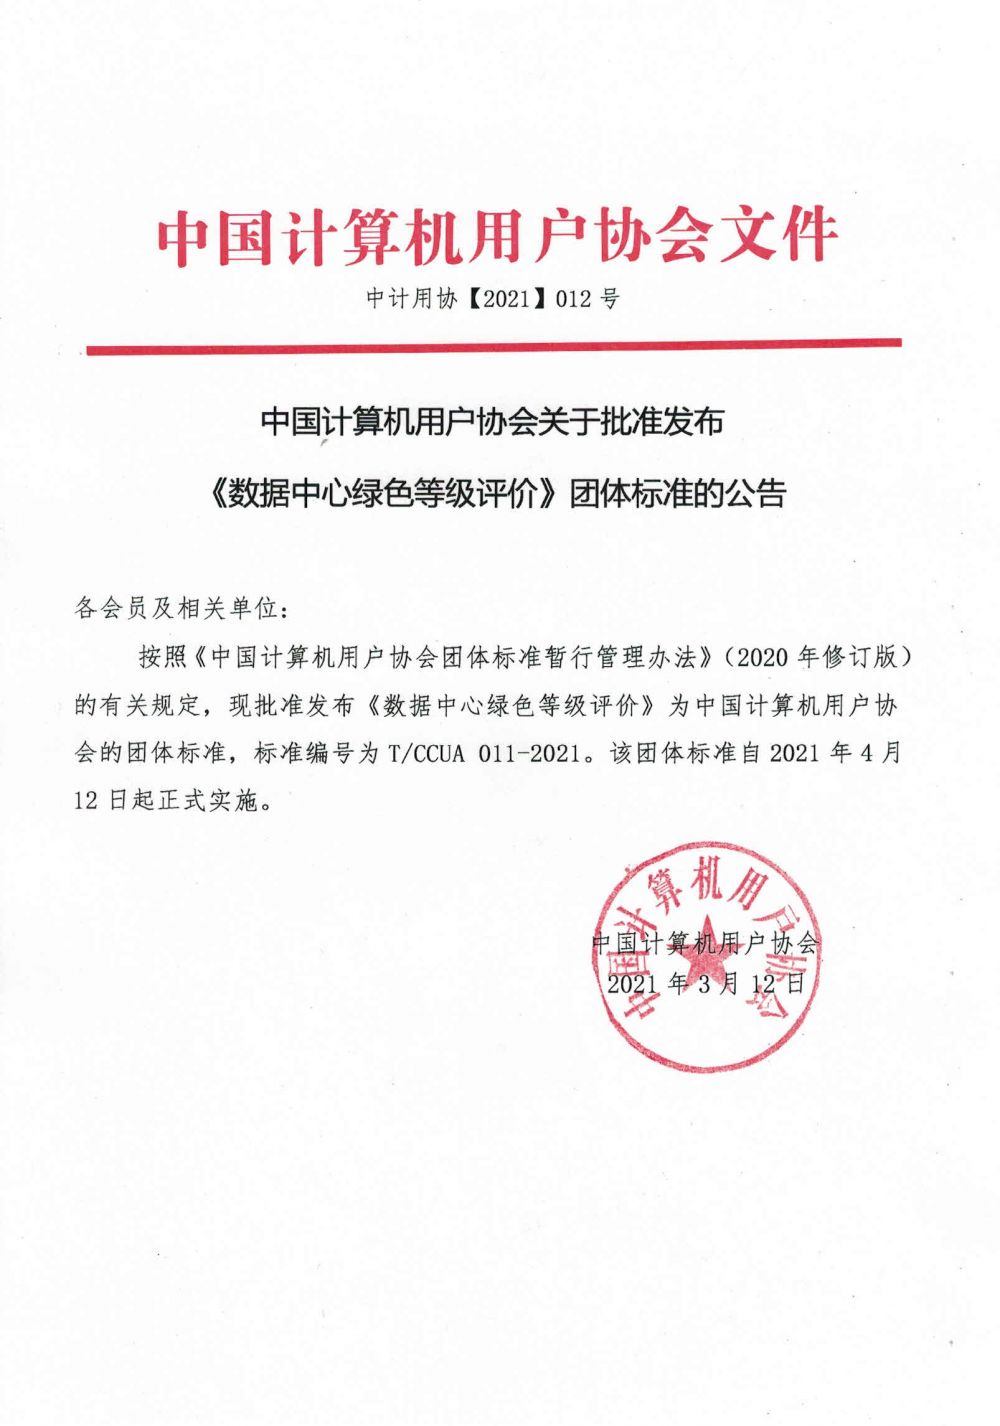 中计用协【2021】012号--中国计算机用户协会关于批准发布《数据中心绿色等级评价》团体标准的公告.jpg